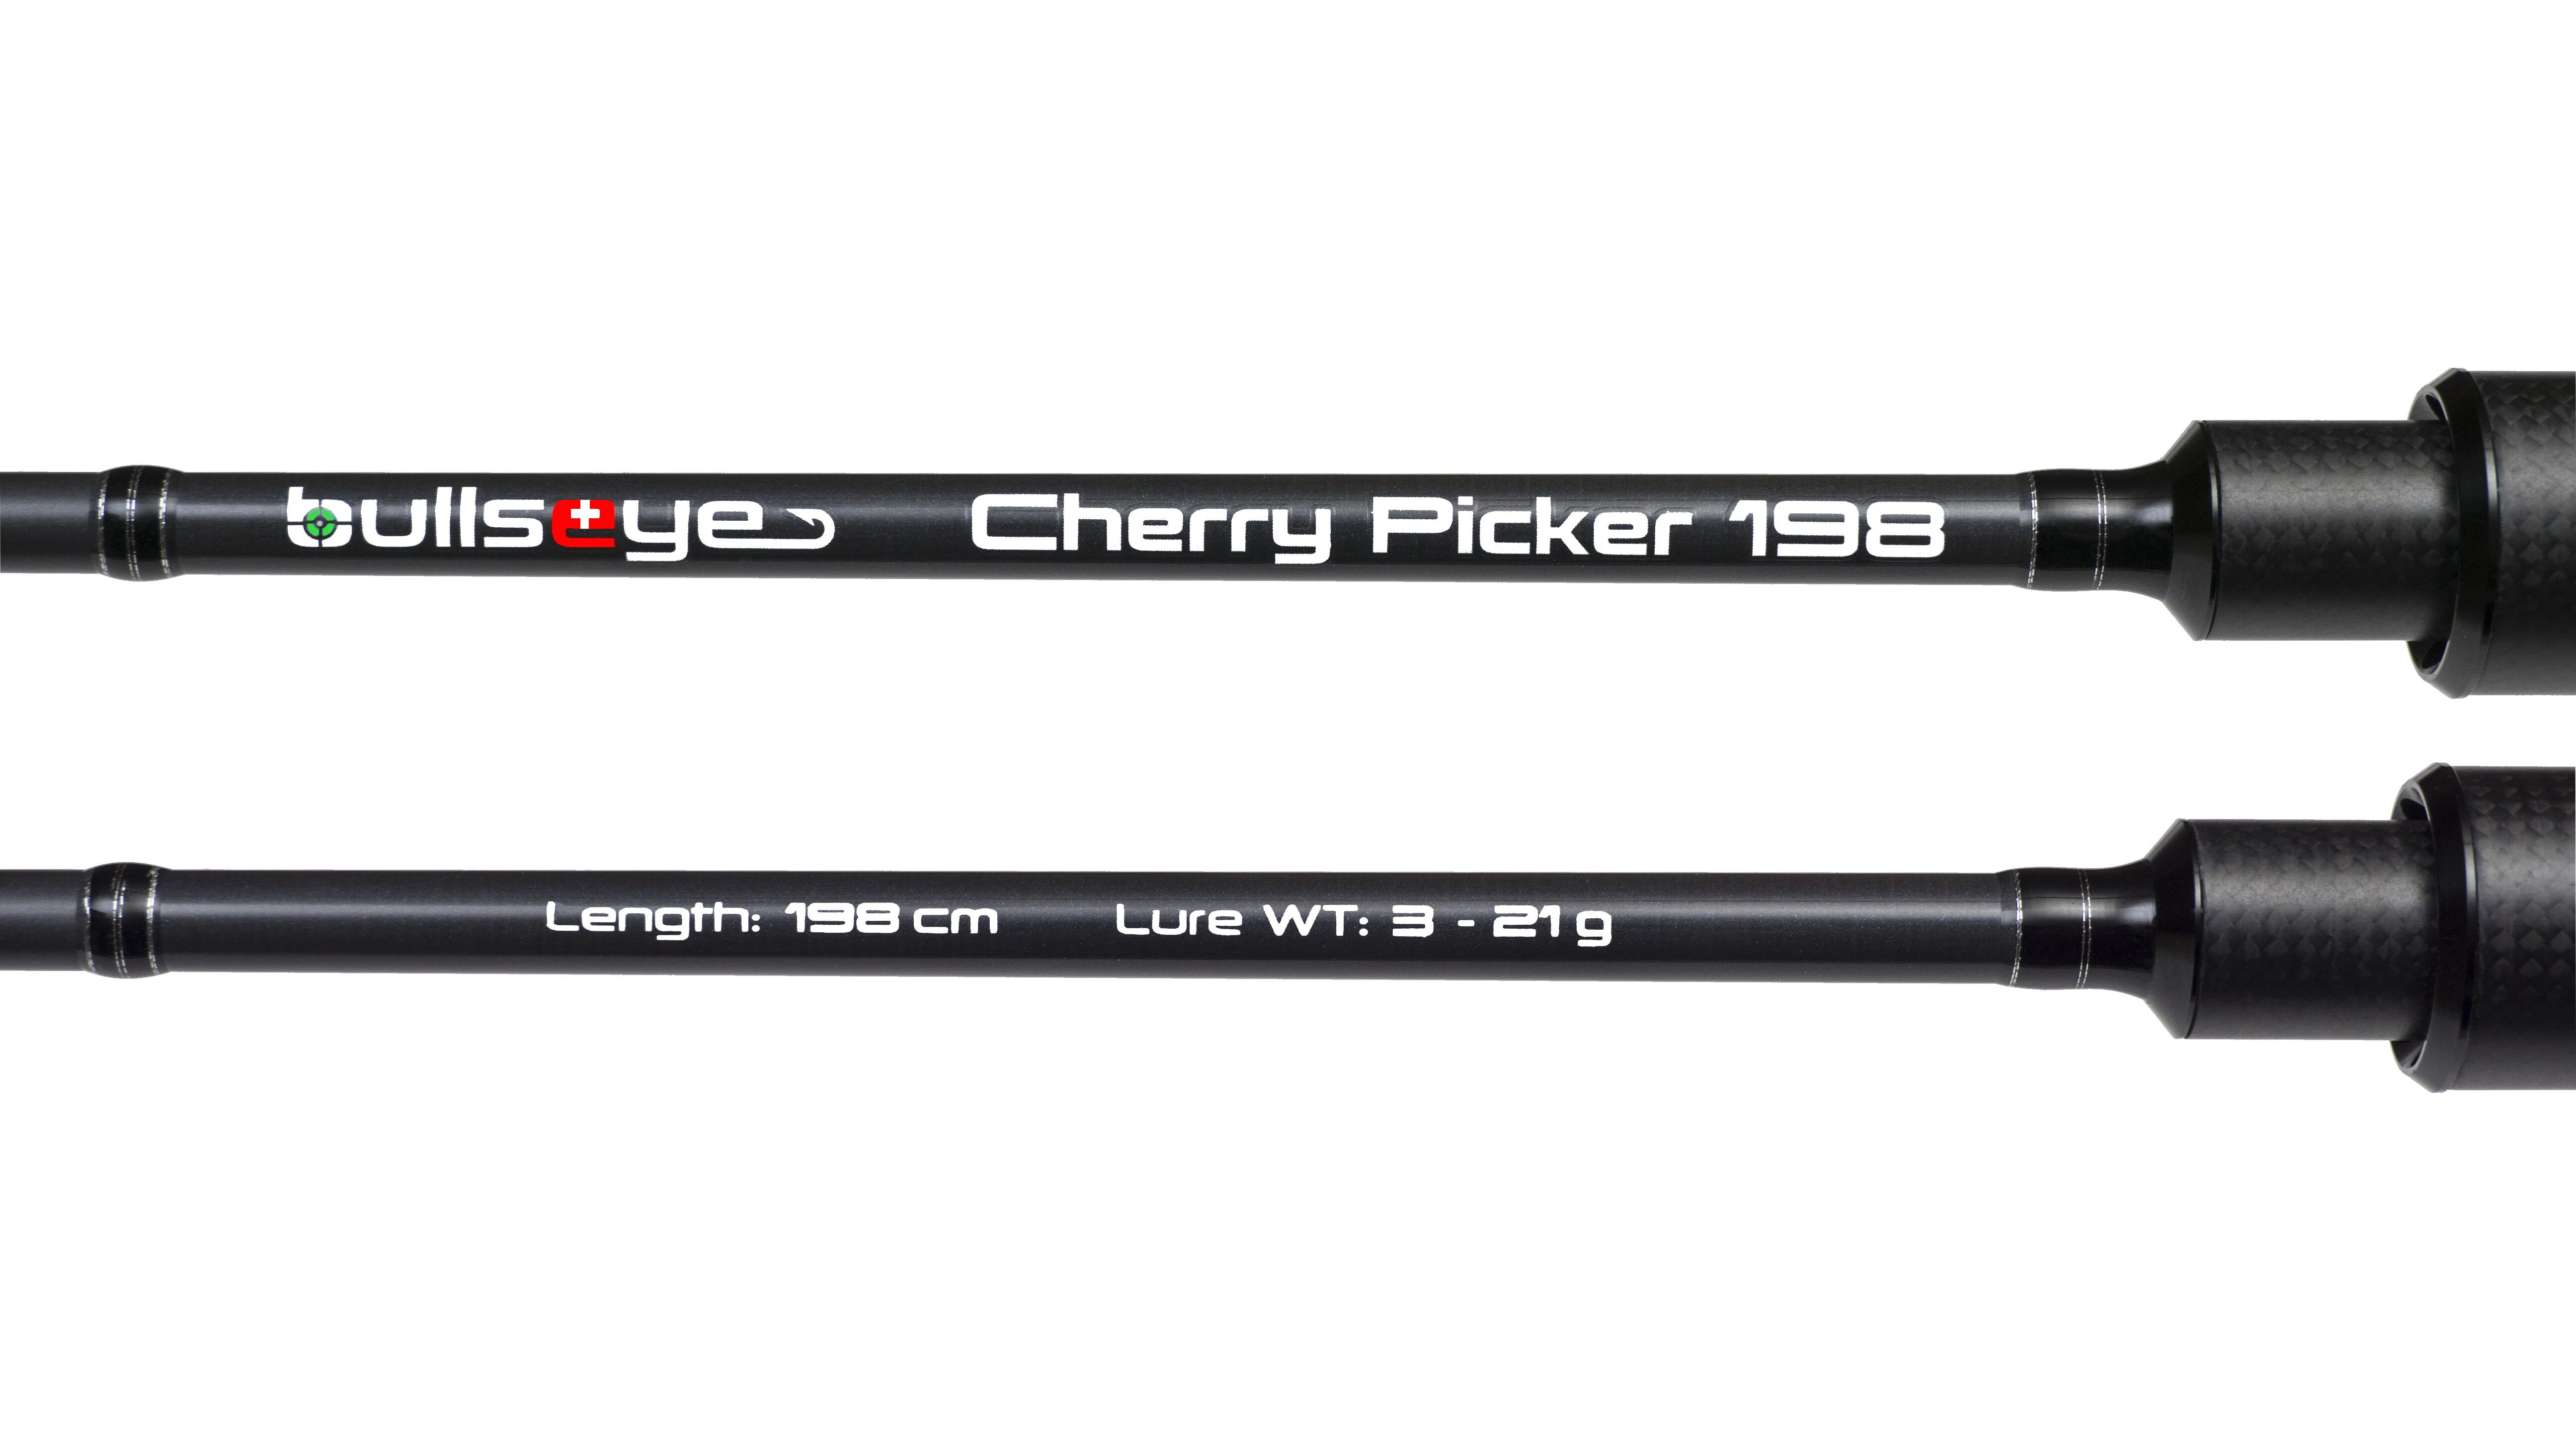 Bullseye Cherry Picker 198 3 - 21g - Spin